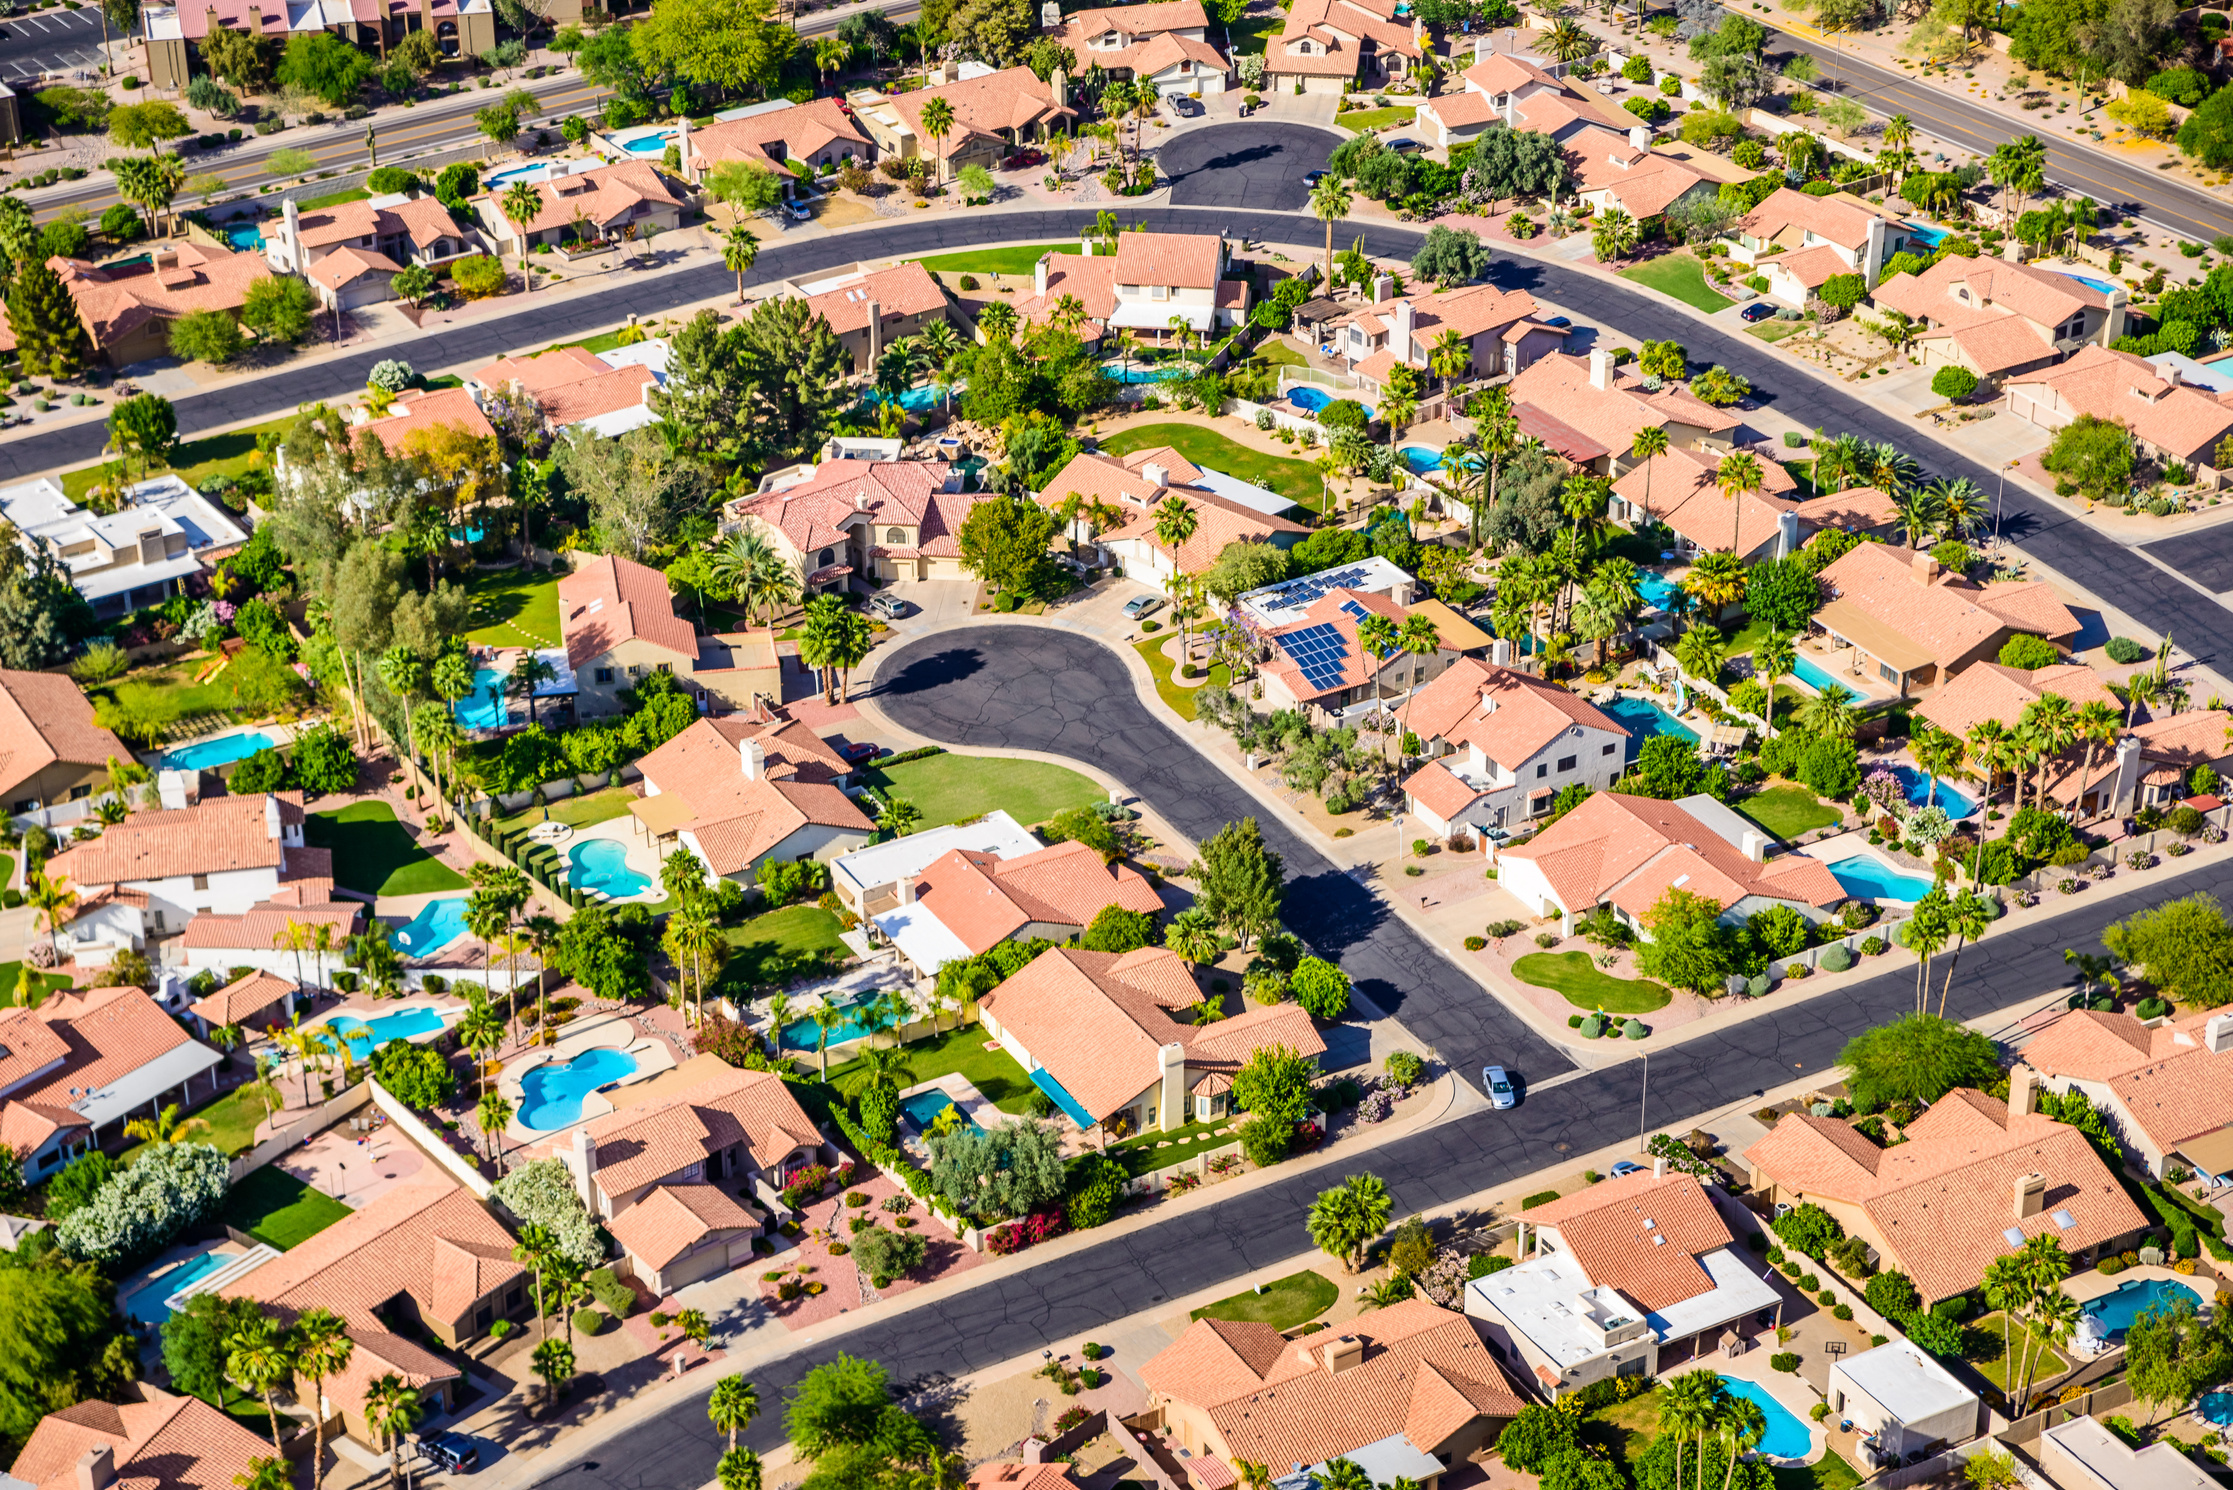 Scottsdale Phoenix Arizona suburban housing development neighborhood - aerial view